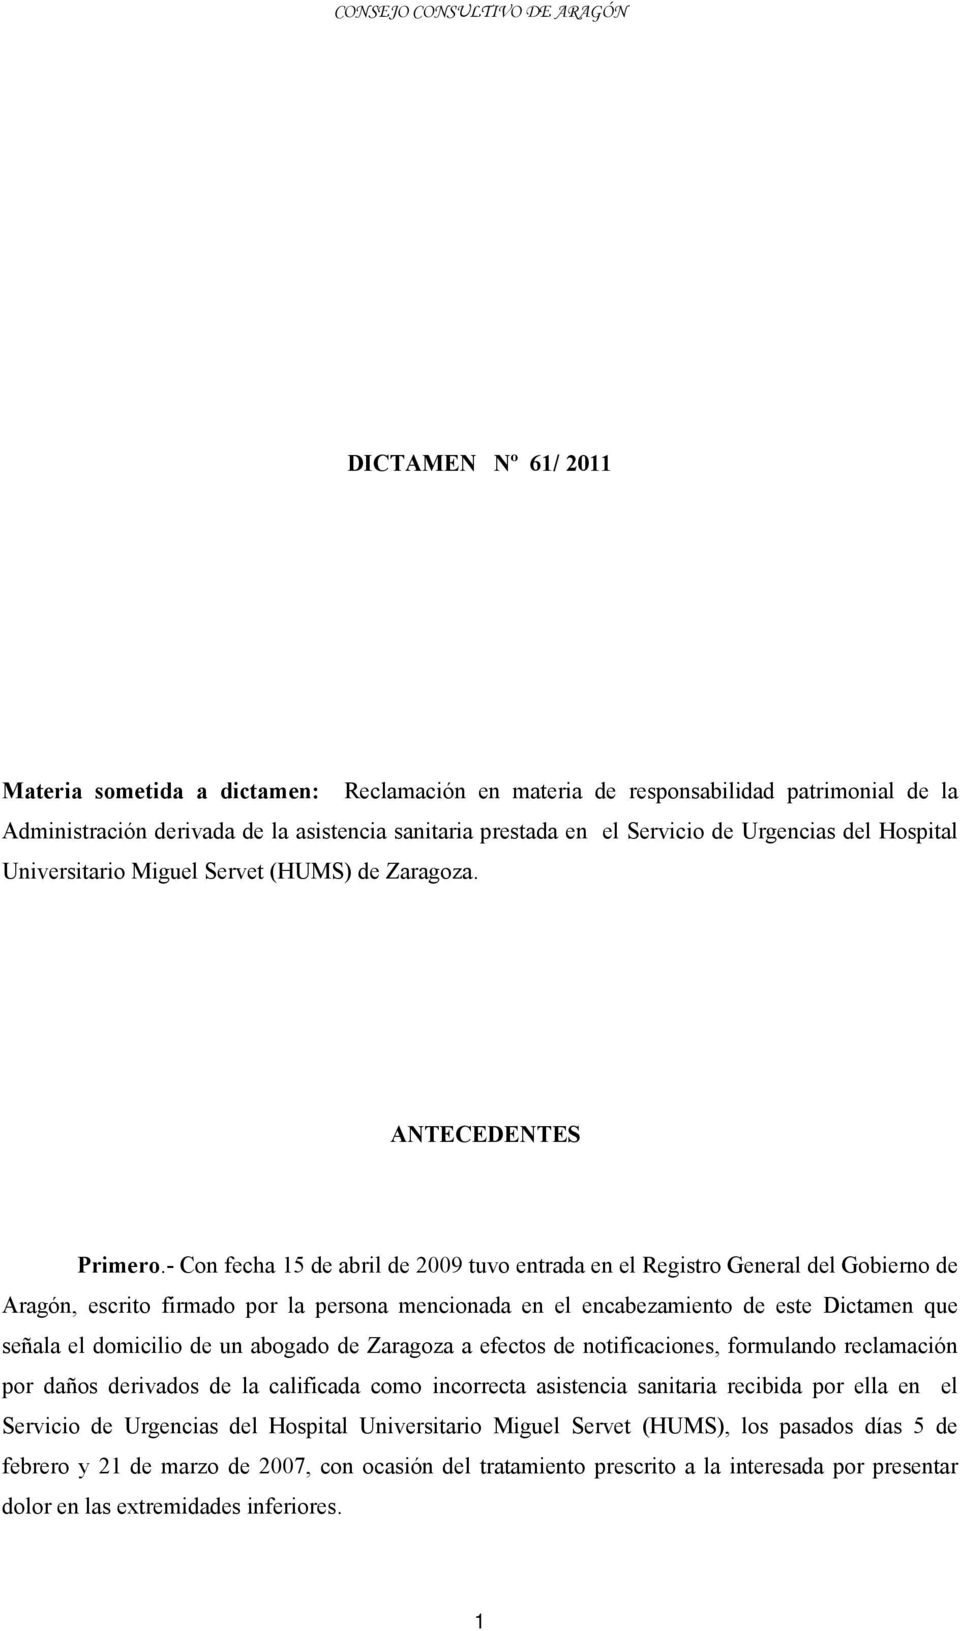 - Con fecha 15 de abril de 2009 tuvo entrada en el Registro General del Gobierno de Aragón, escrito firmado por la persona mencionada en el encabezamiento de este Dictamen que señala el domicilio de